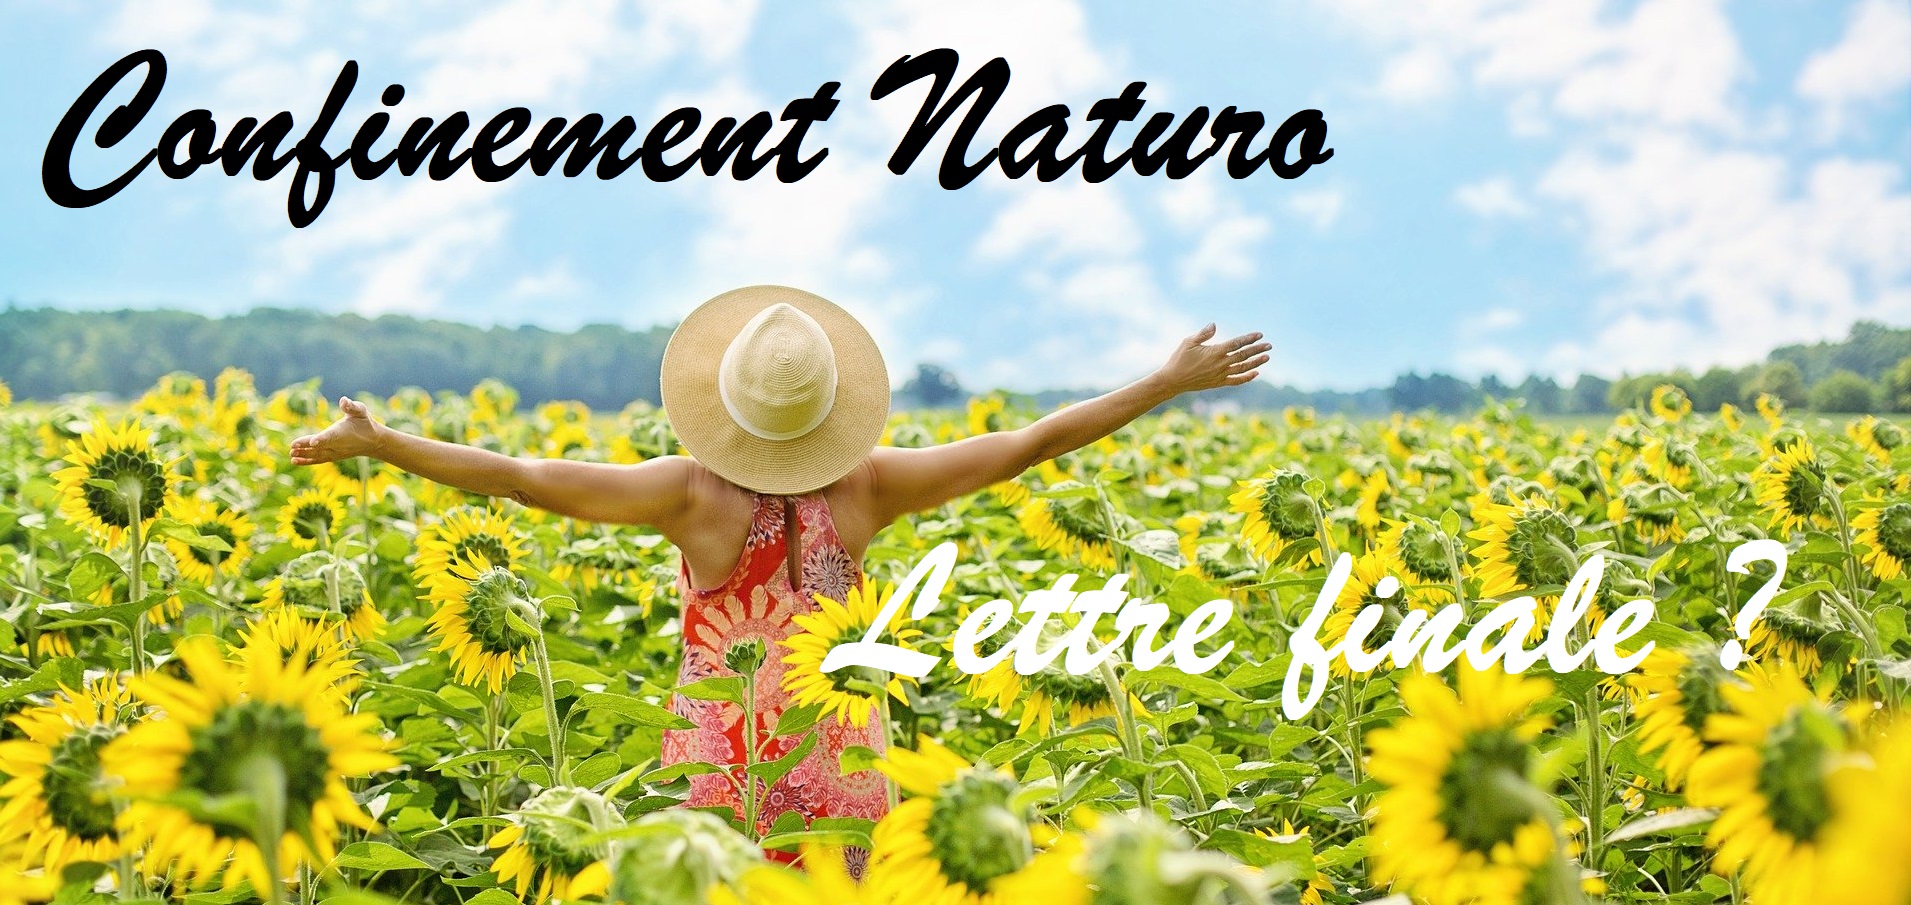 Confinement Naturo (Lettre finale ?) – Célébrons